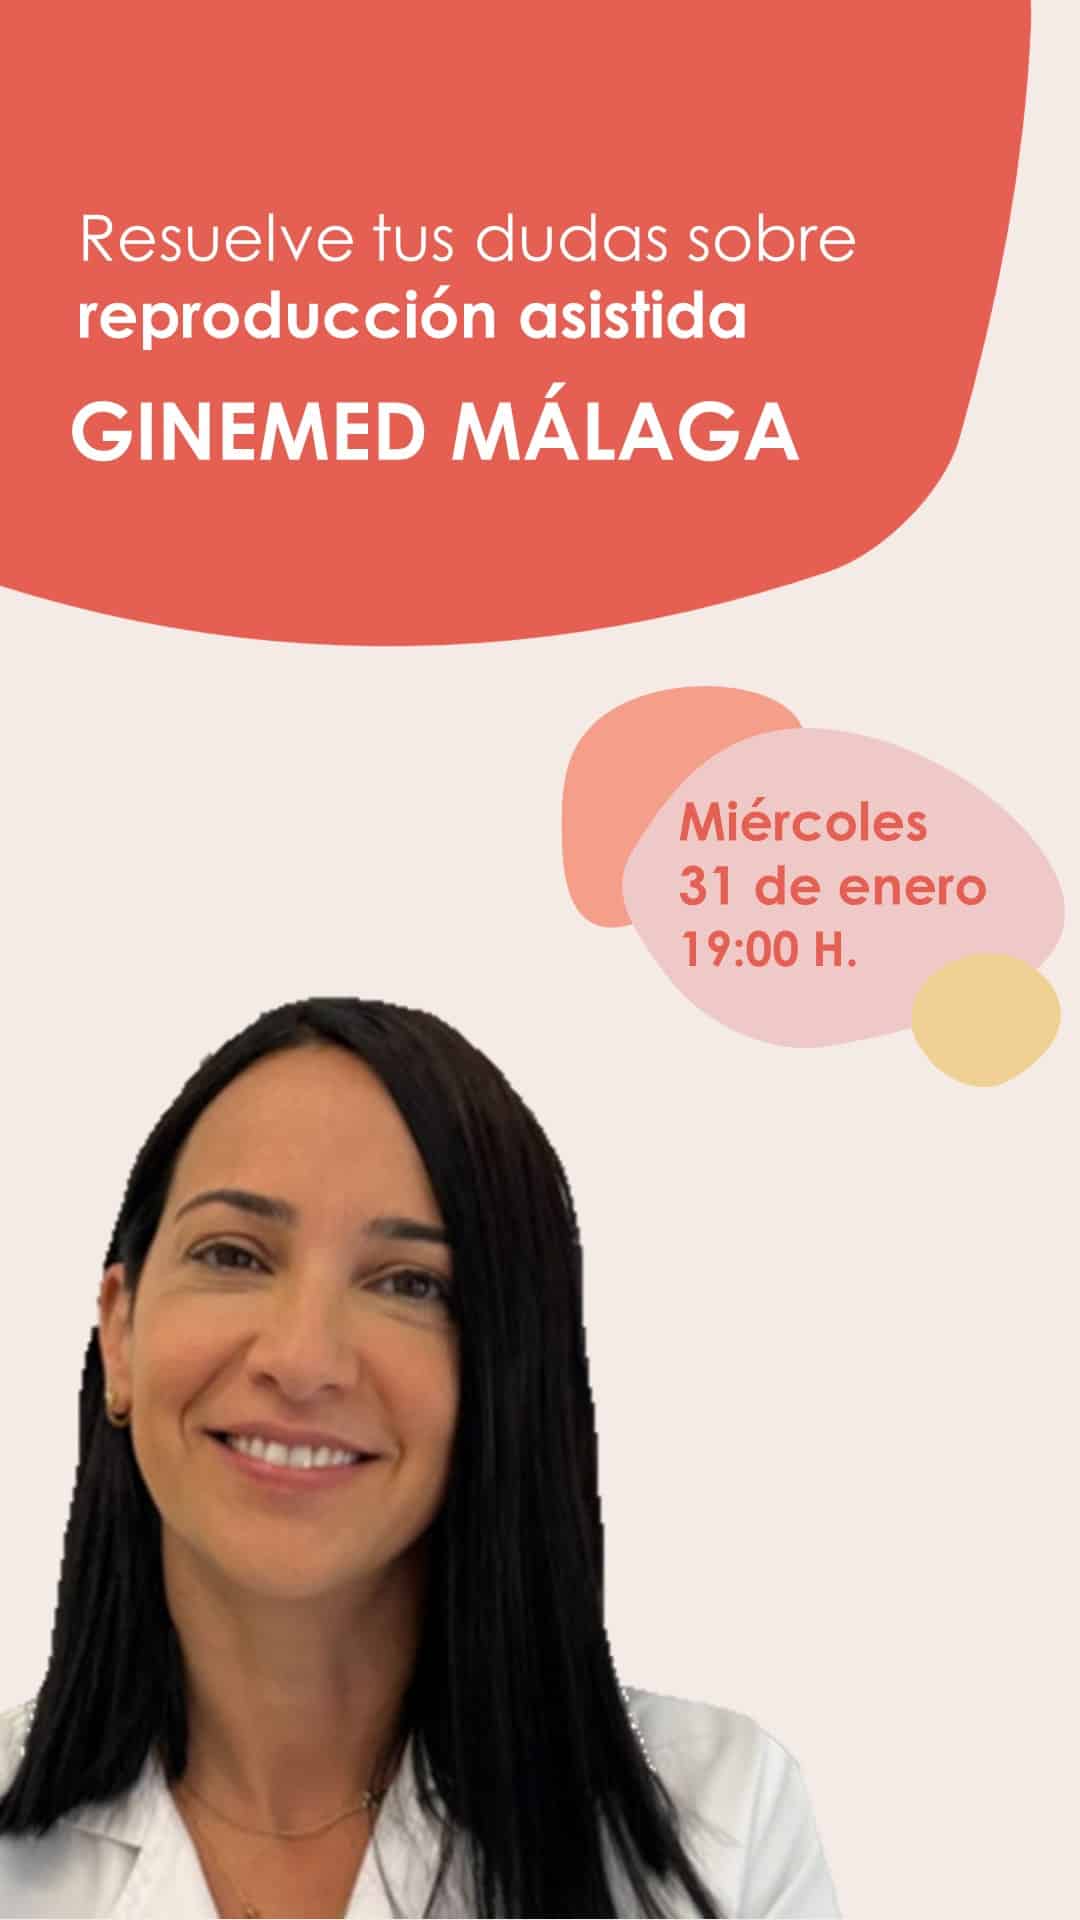 Instagram Live desde la clínica de reproducción asistida Ginemed Málaga con la Dra. Arantxa Pérez